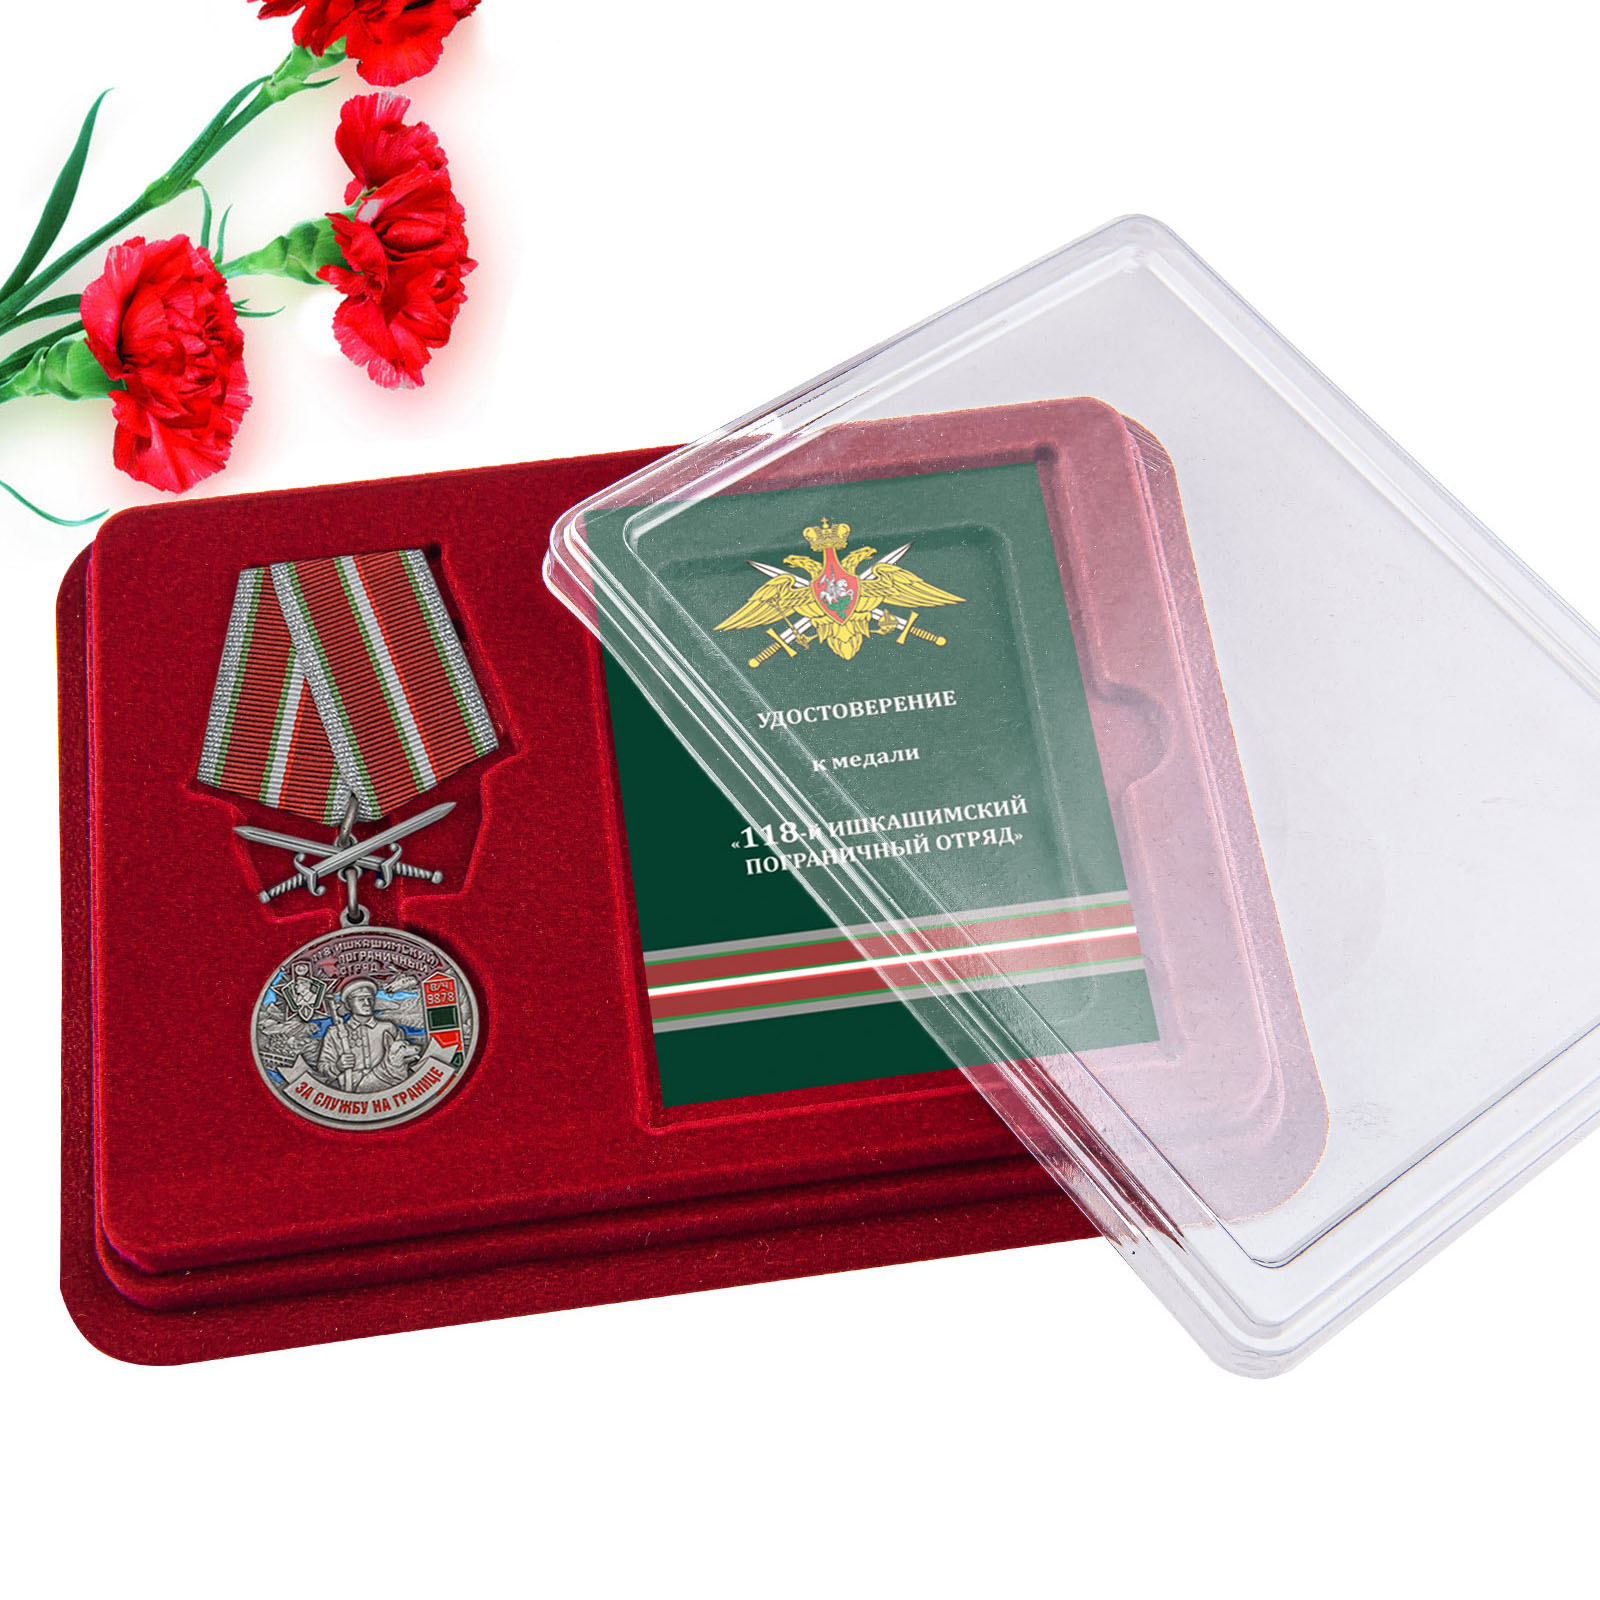 Купить медаль За службу в Ишкашимском пограничном отряде с доставкой